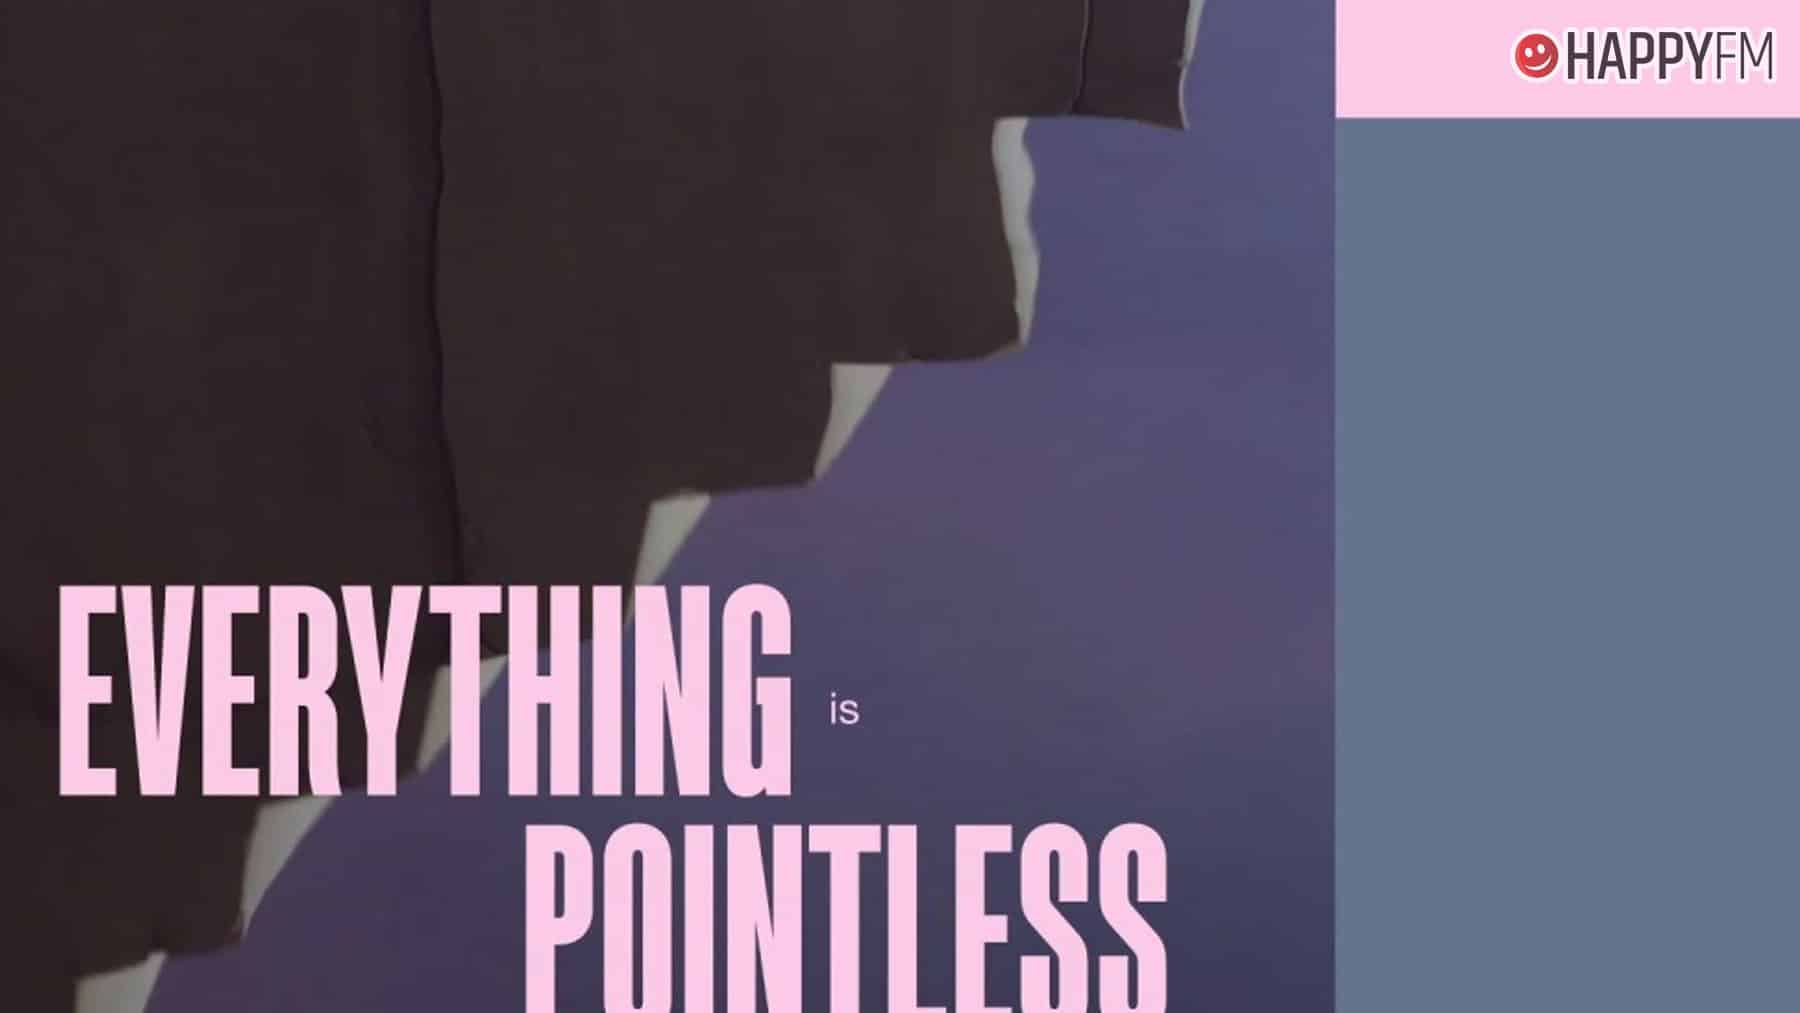 ‘Pointless’, de Lewis Capaldi: letra (en español) y vídeo